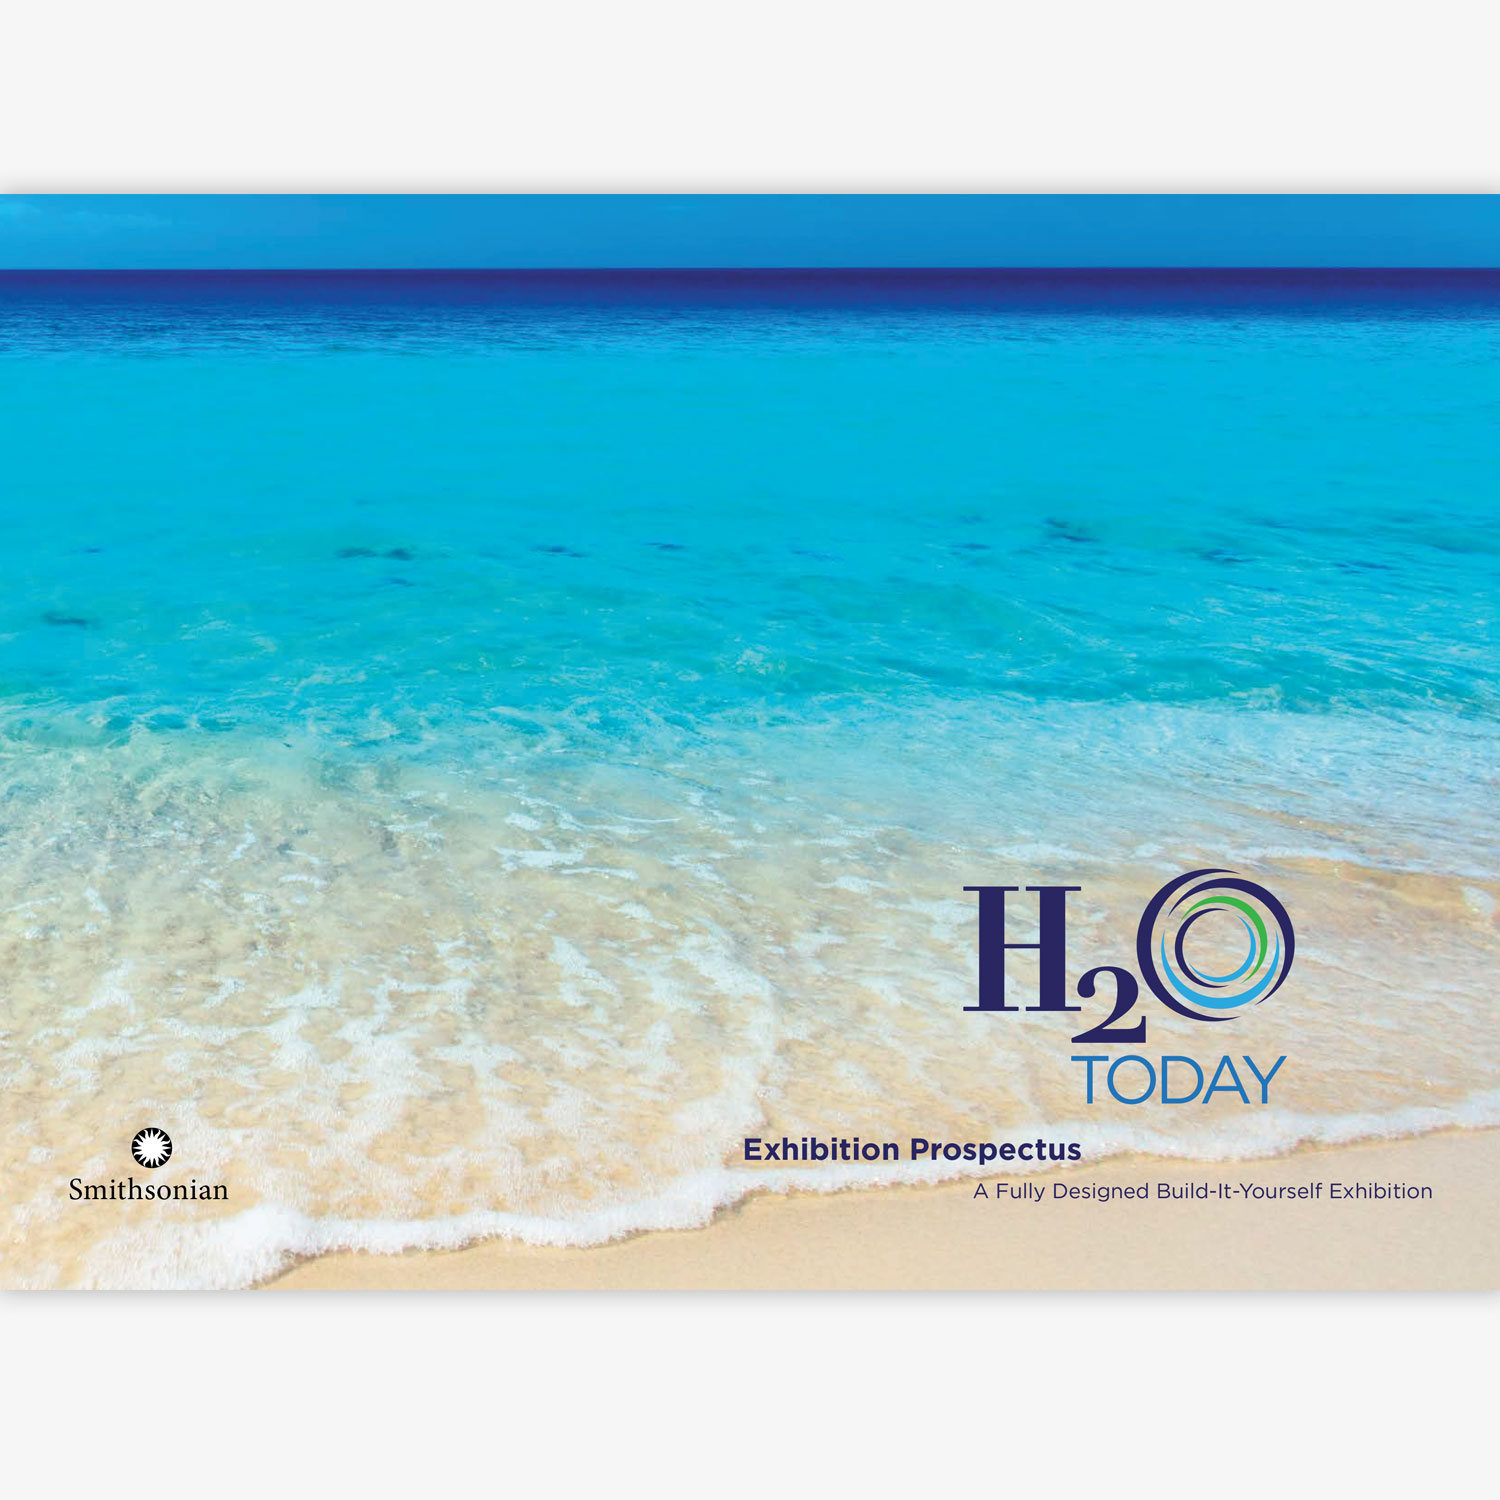   H2O Today  – Exhibition Prospectus 